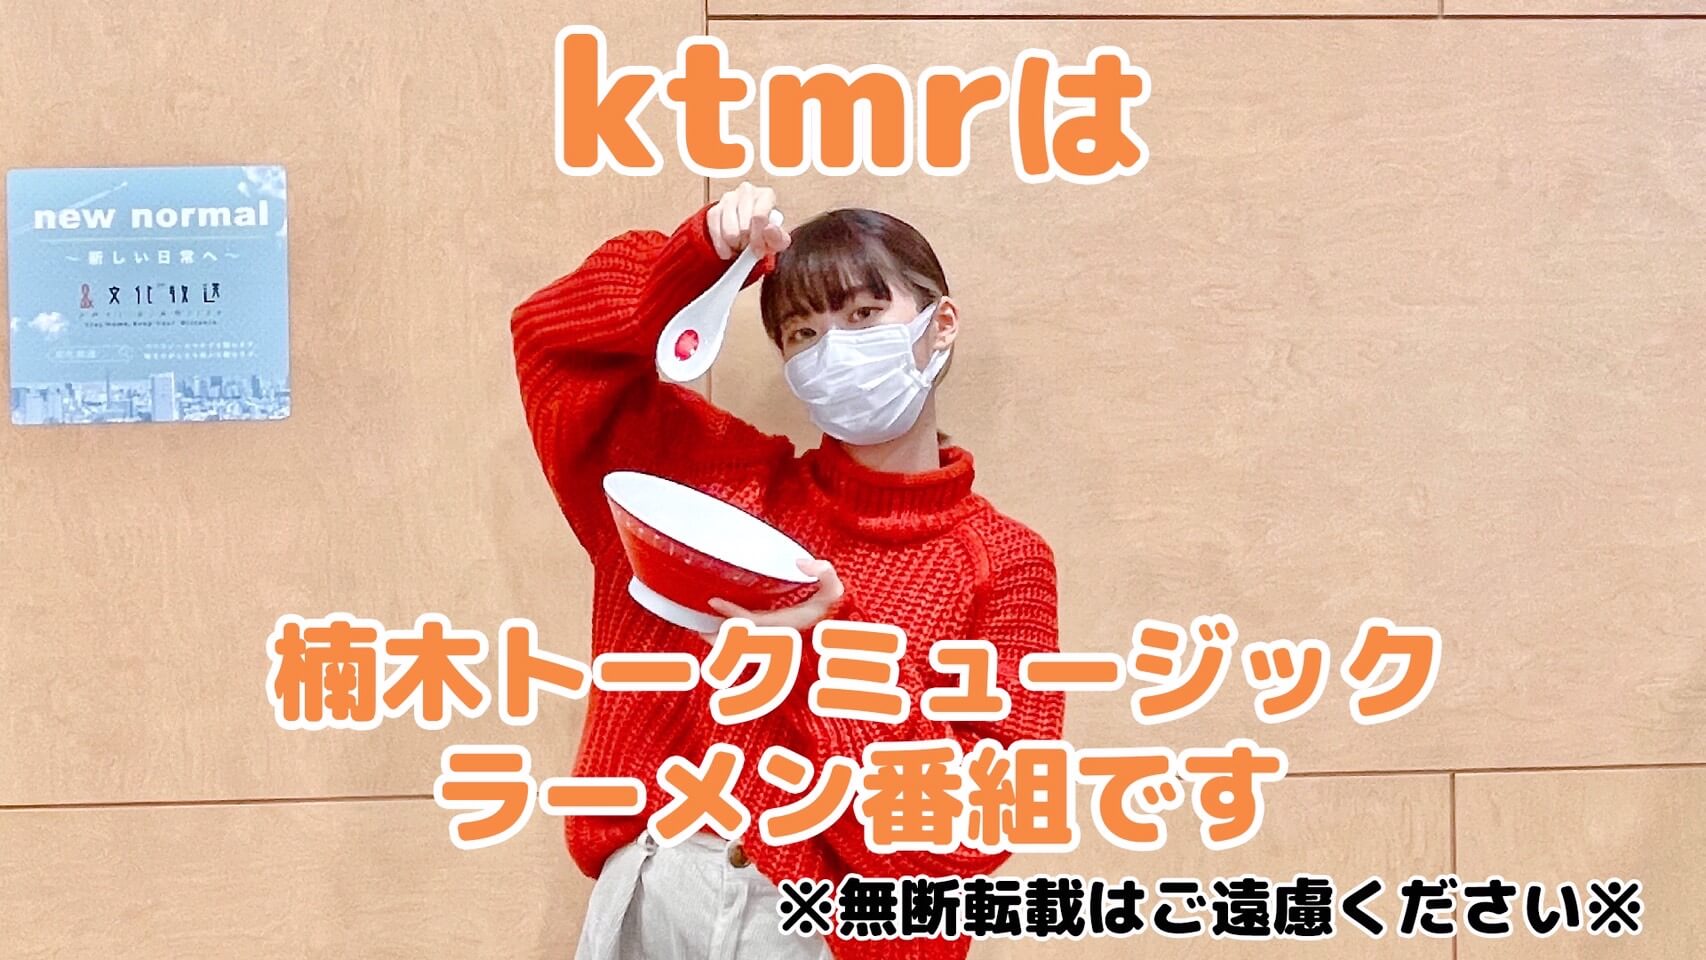 「ktmr」は楠木トークミュージックラーメン番組です